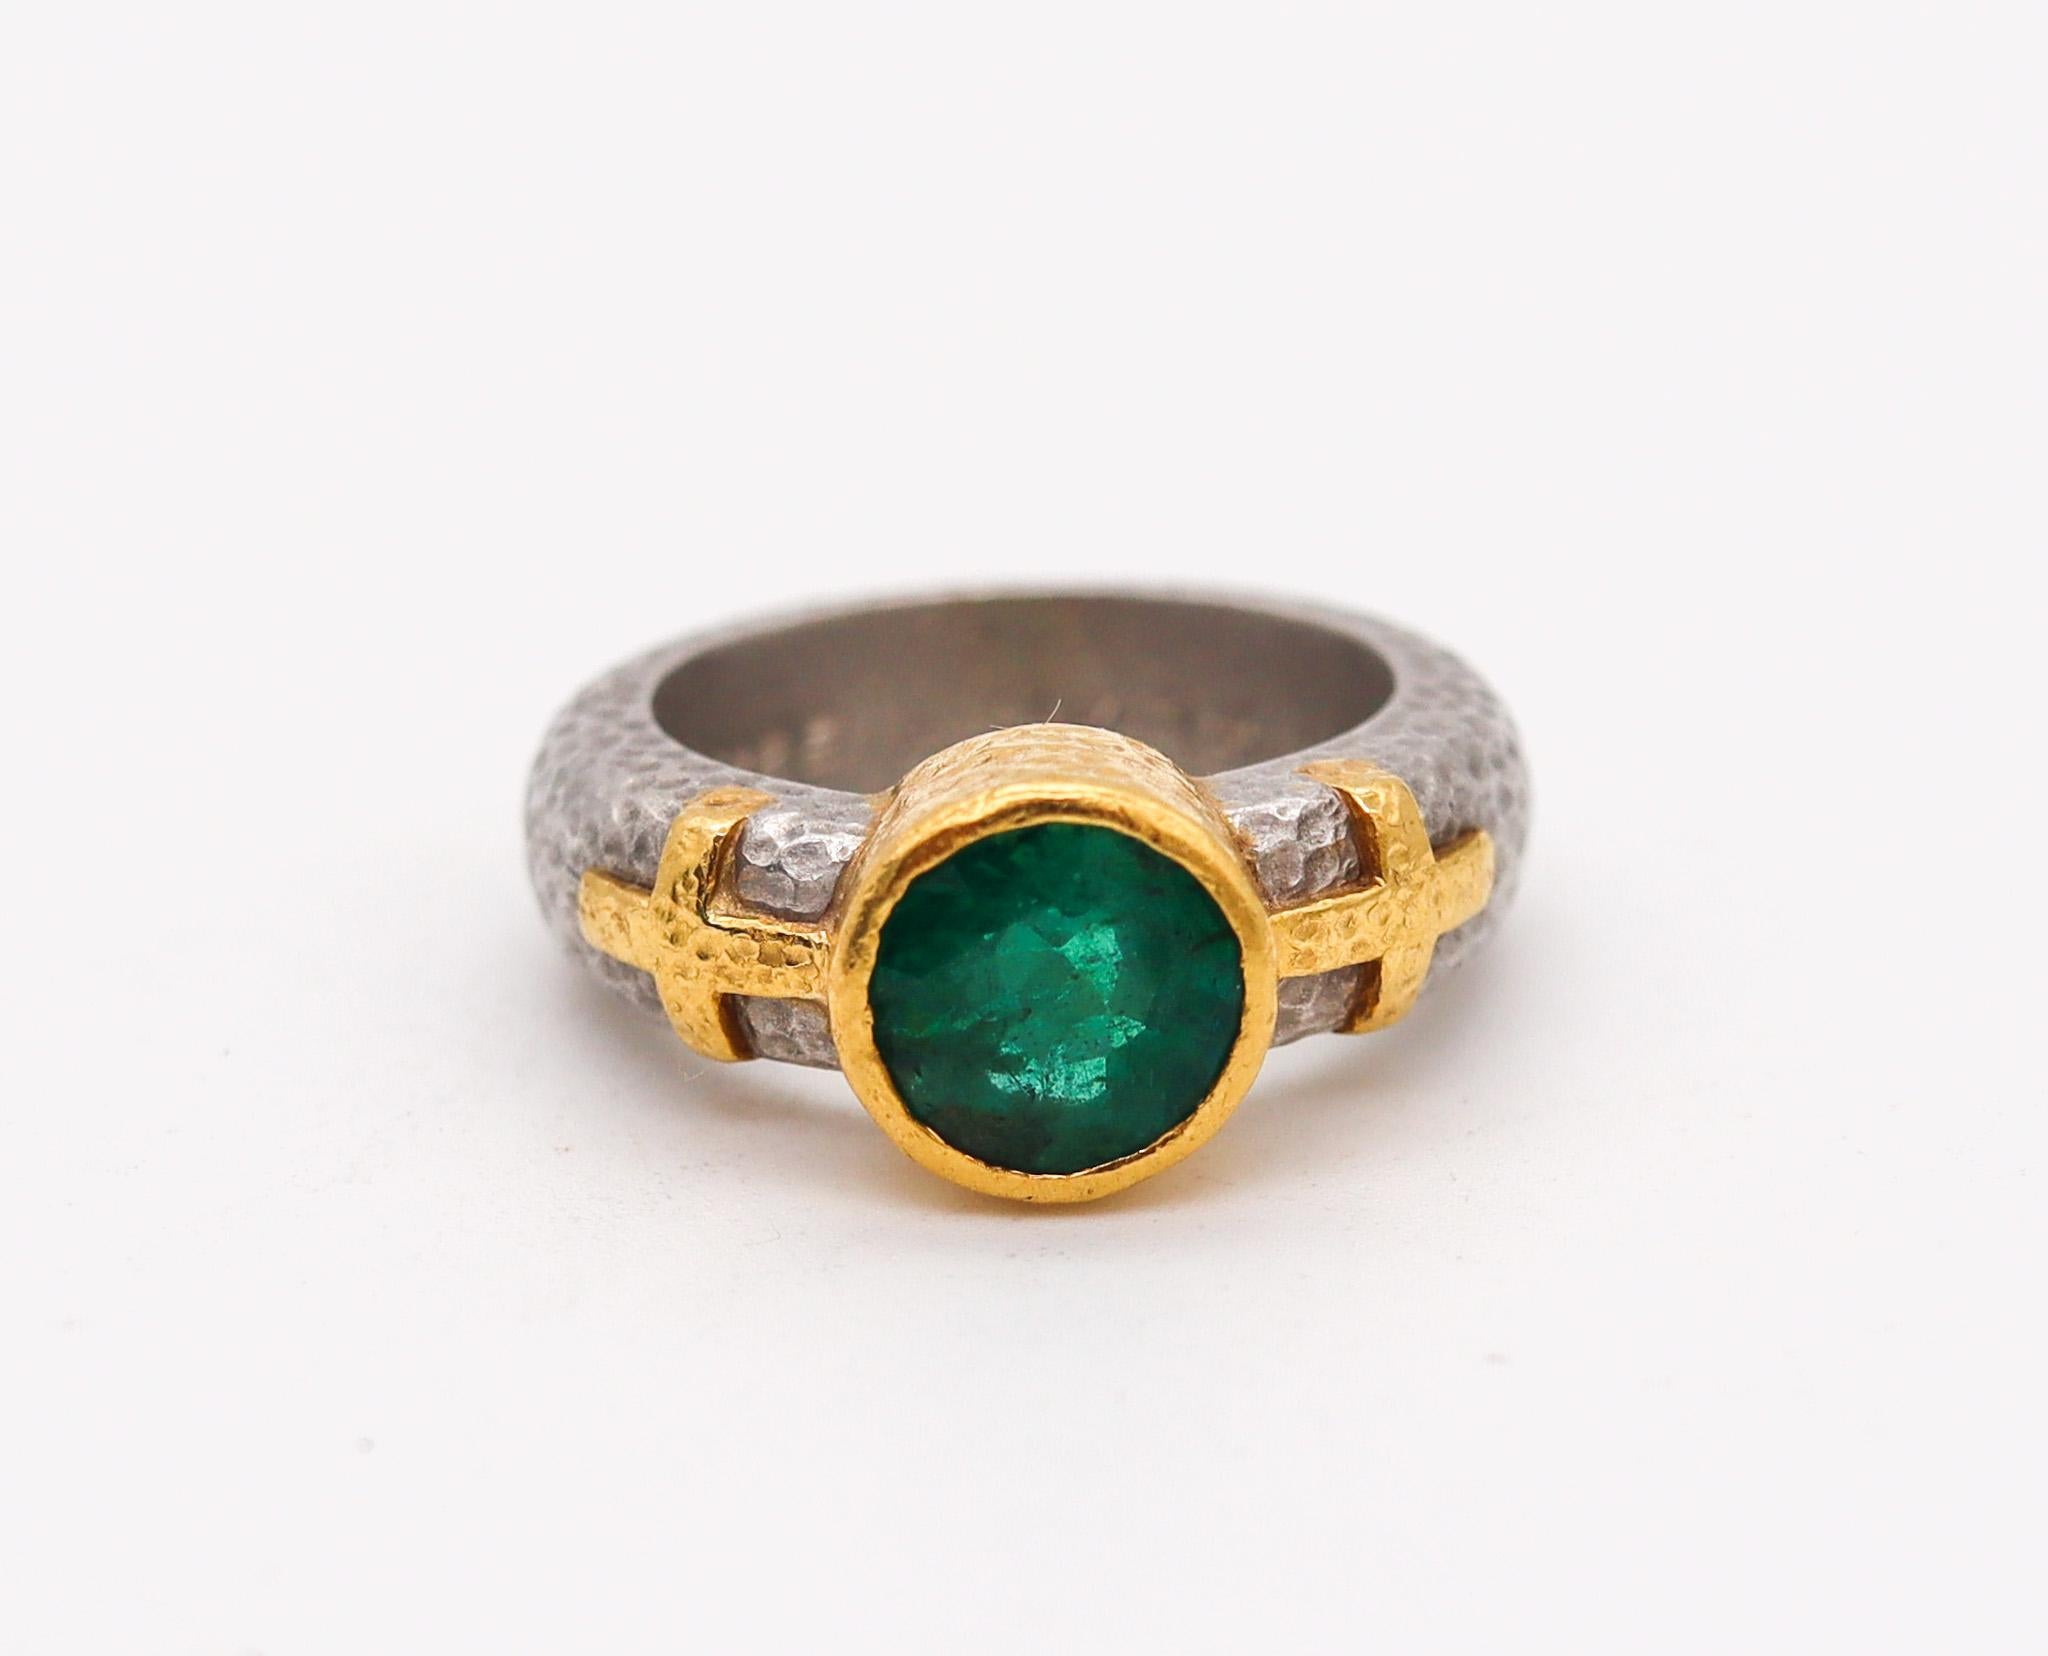 Gehämmerter Ring, entworfen von Wendy Walker.

Schöner Ring, der 1995 in Los Angeles, Kalifornien, von der amerikanischen Schmuckdesignerin Wendy Walker entworfen wurde. Dieser Ring wurde mit byzantinischen Mustern aus massivem Platin (950/.999) und